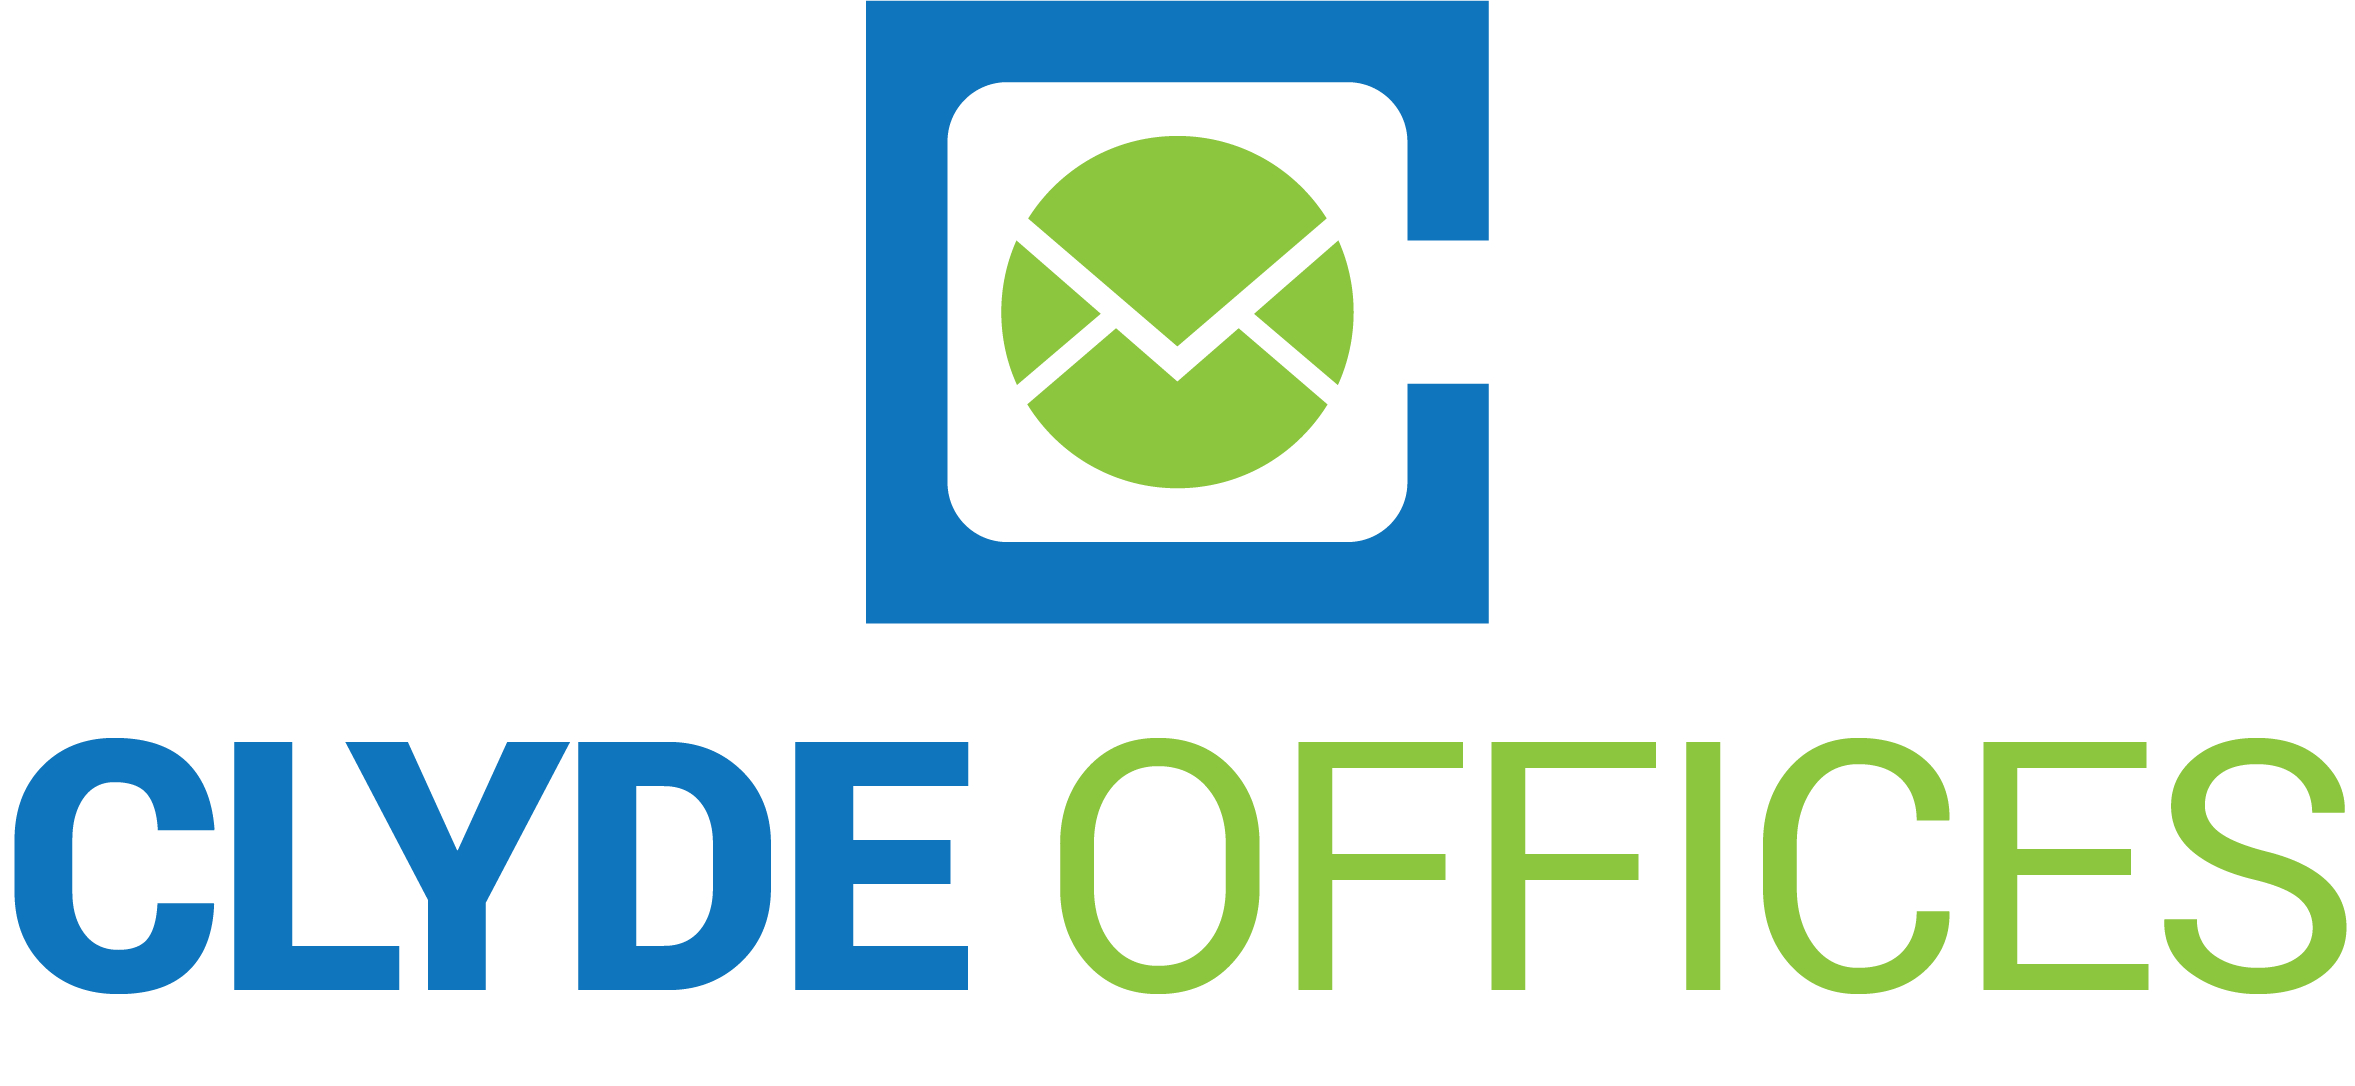 Clyde-Office-logo.jpg